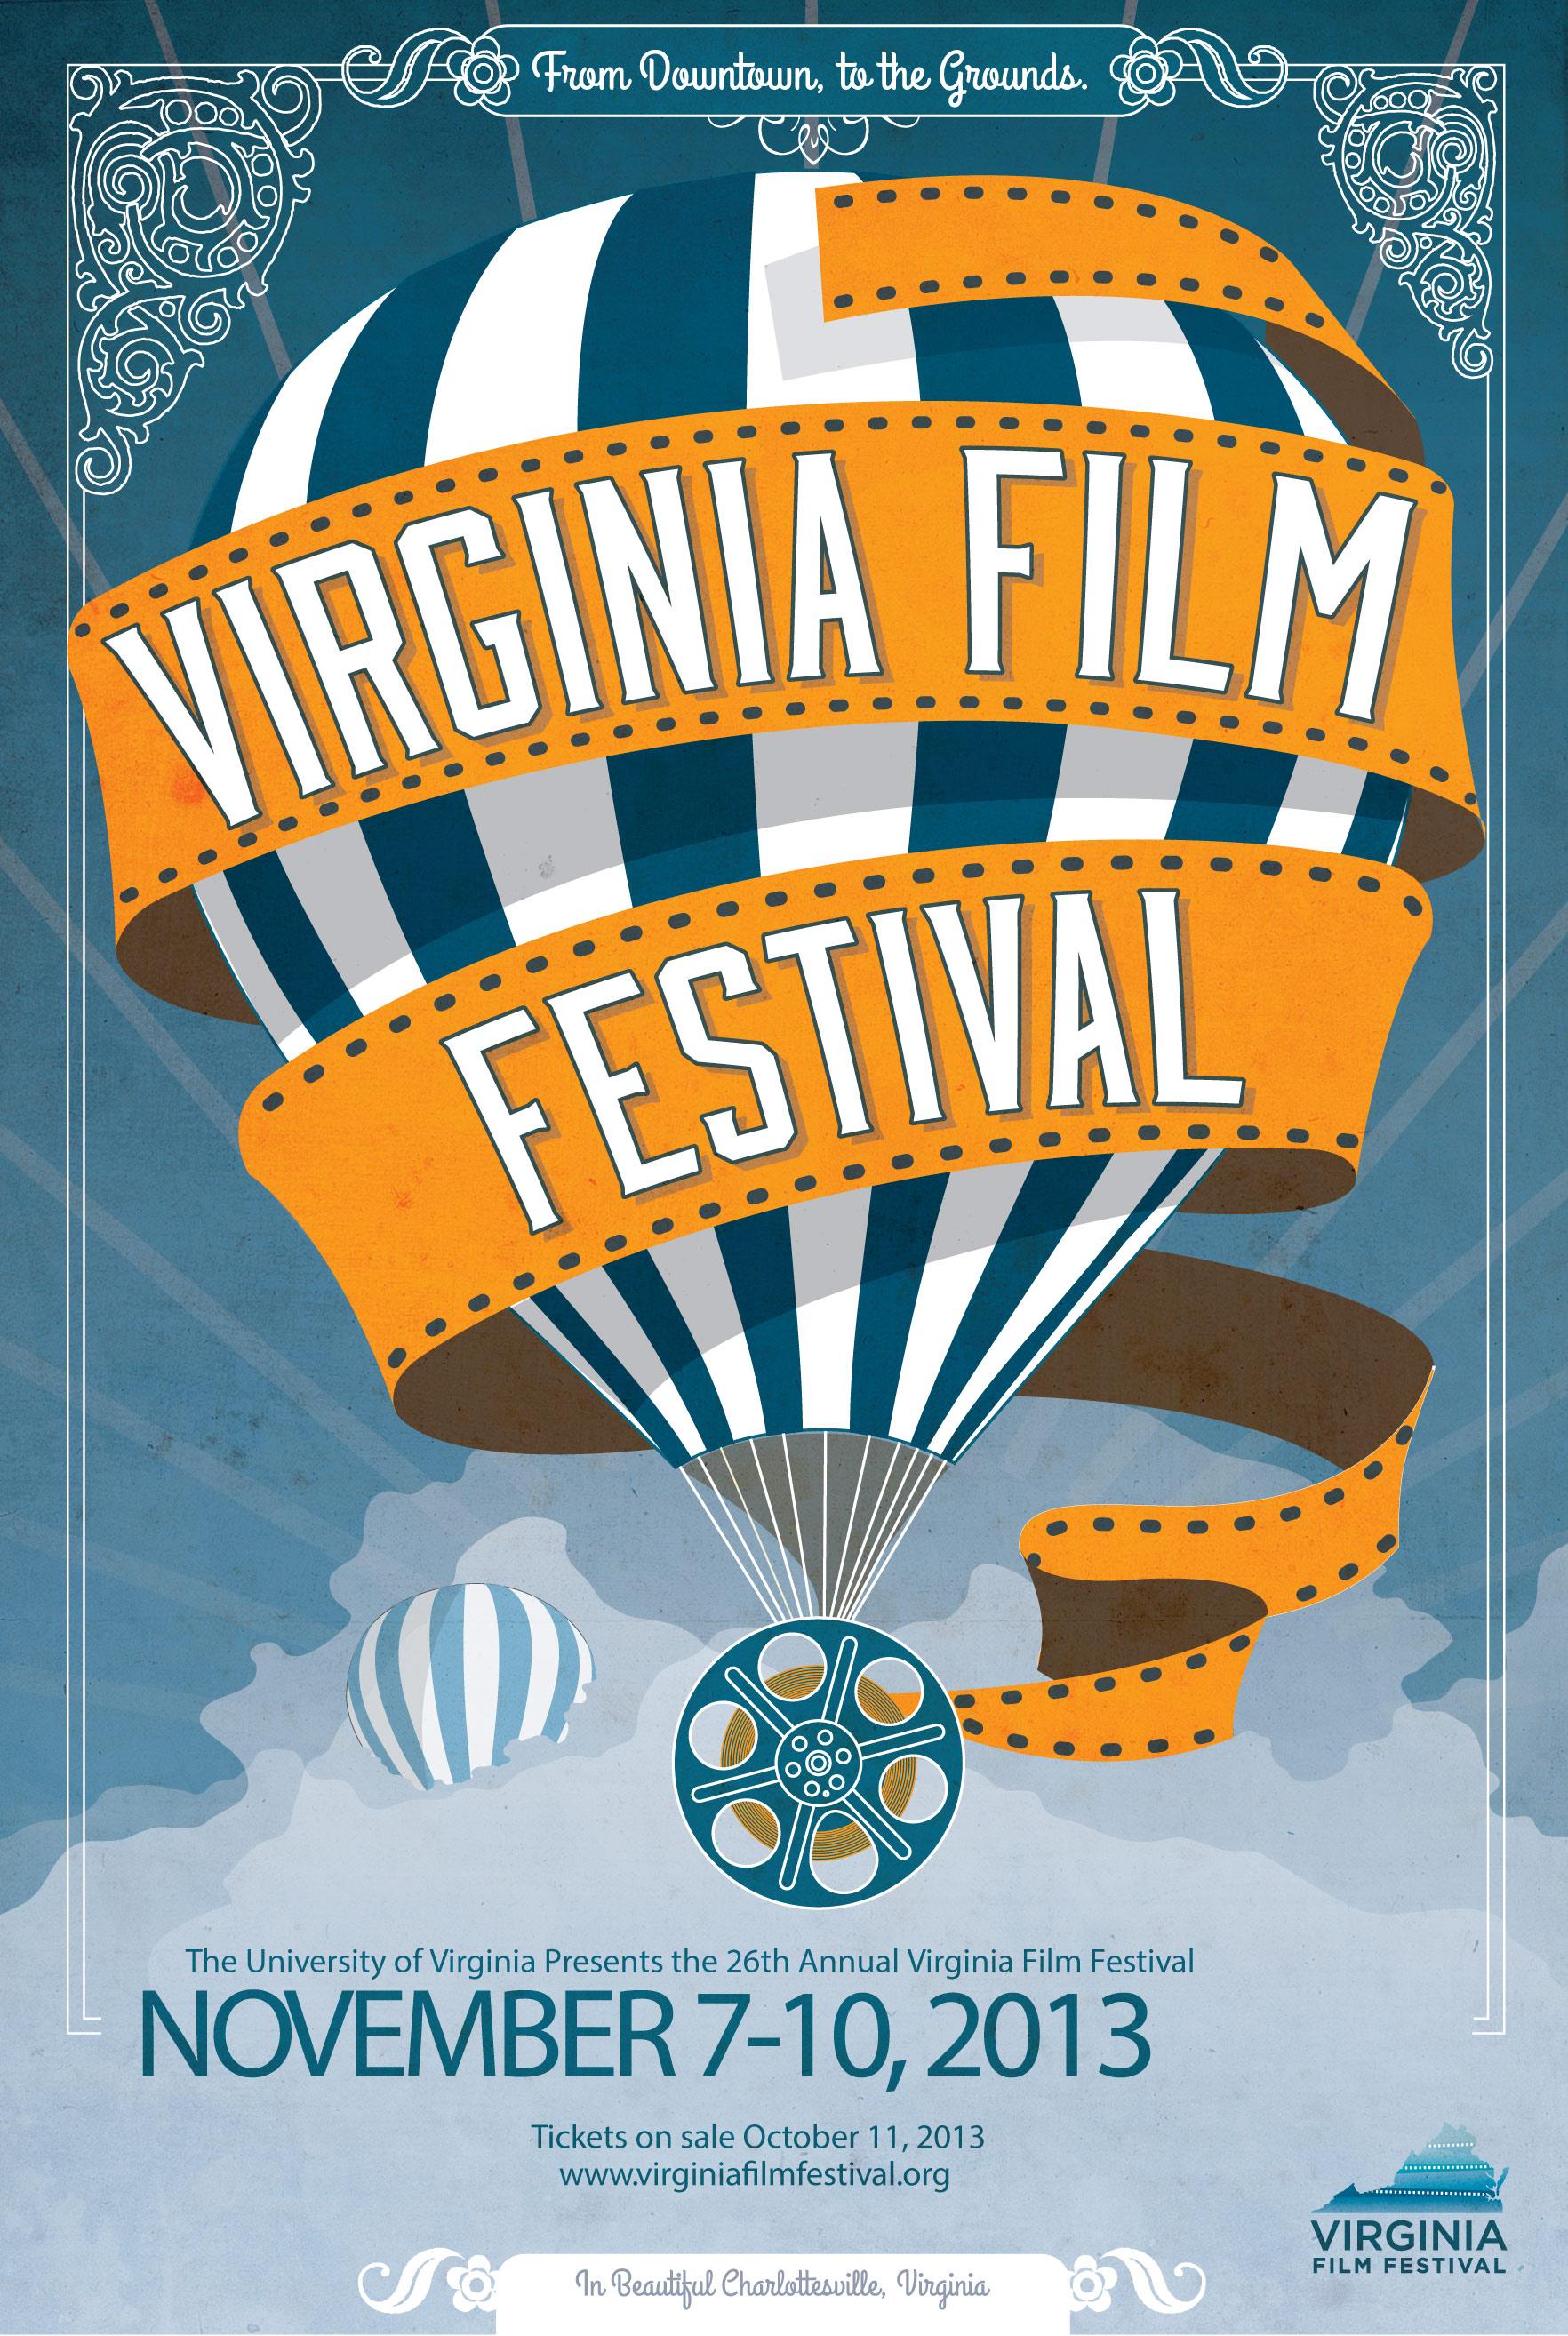 Virginia Film Festival Schedule to Feature Festivities Galore UVA Today